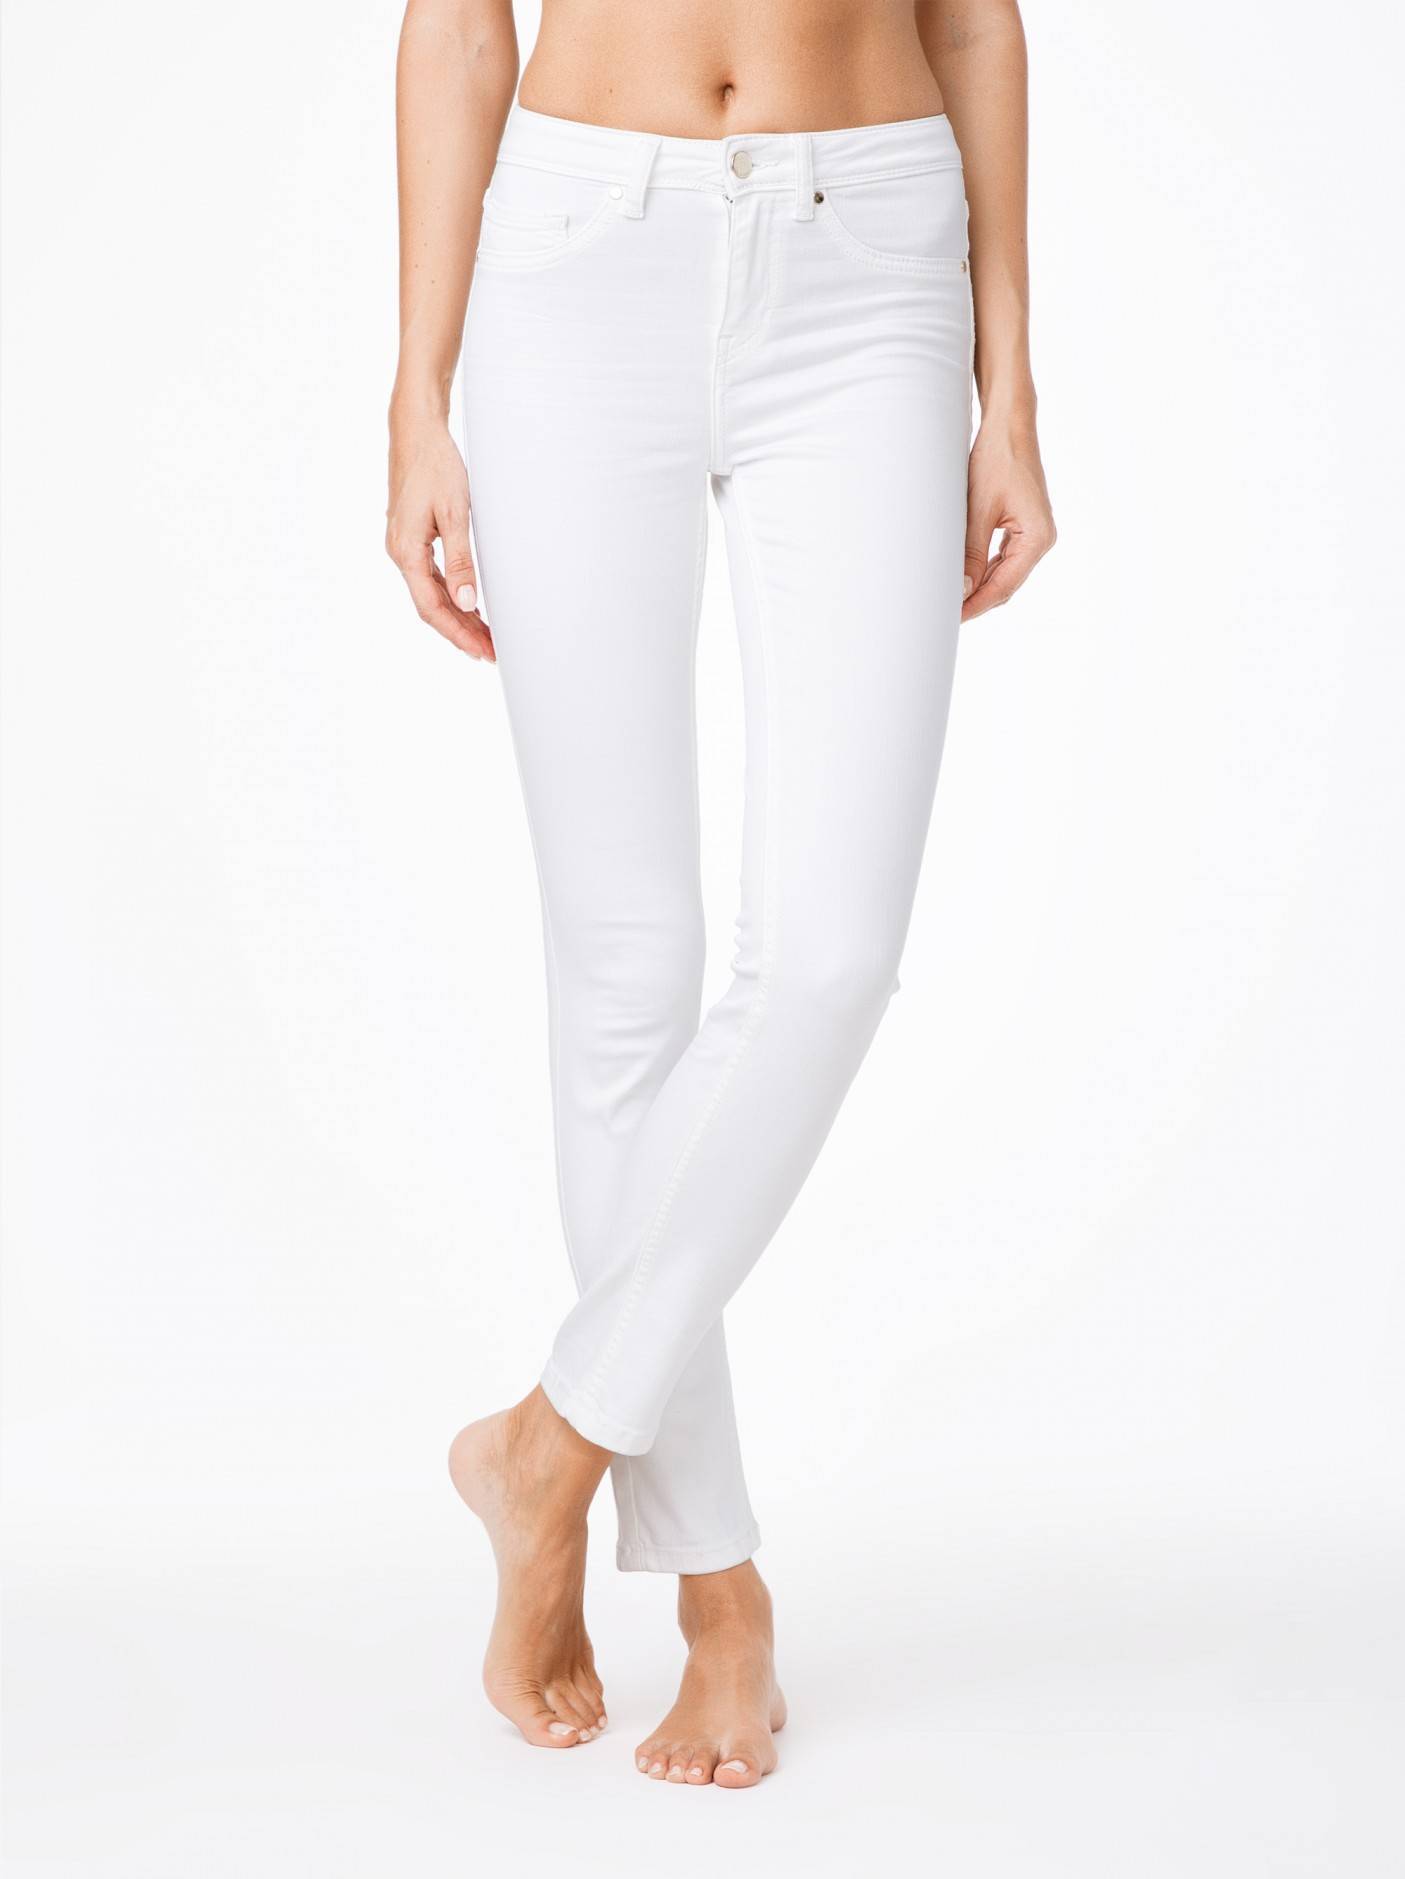 Ультракомфортные моделирующие джинсы CON-38W (NEW) Lycra® Conte ⭐️, цвет white, размер 164-102